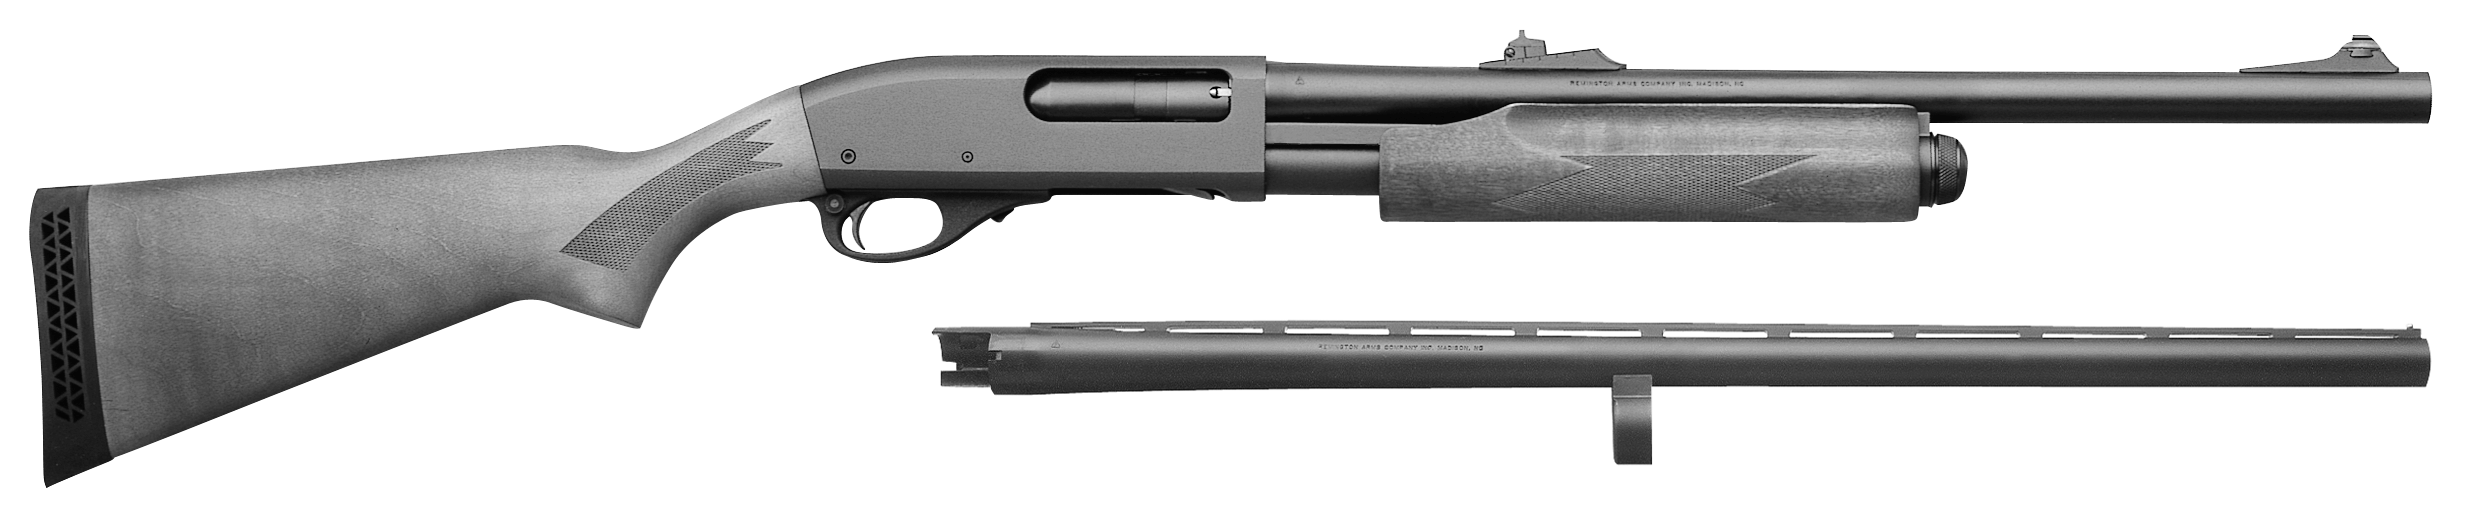 Model 870 Express Super Magnum